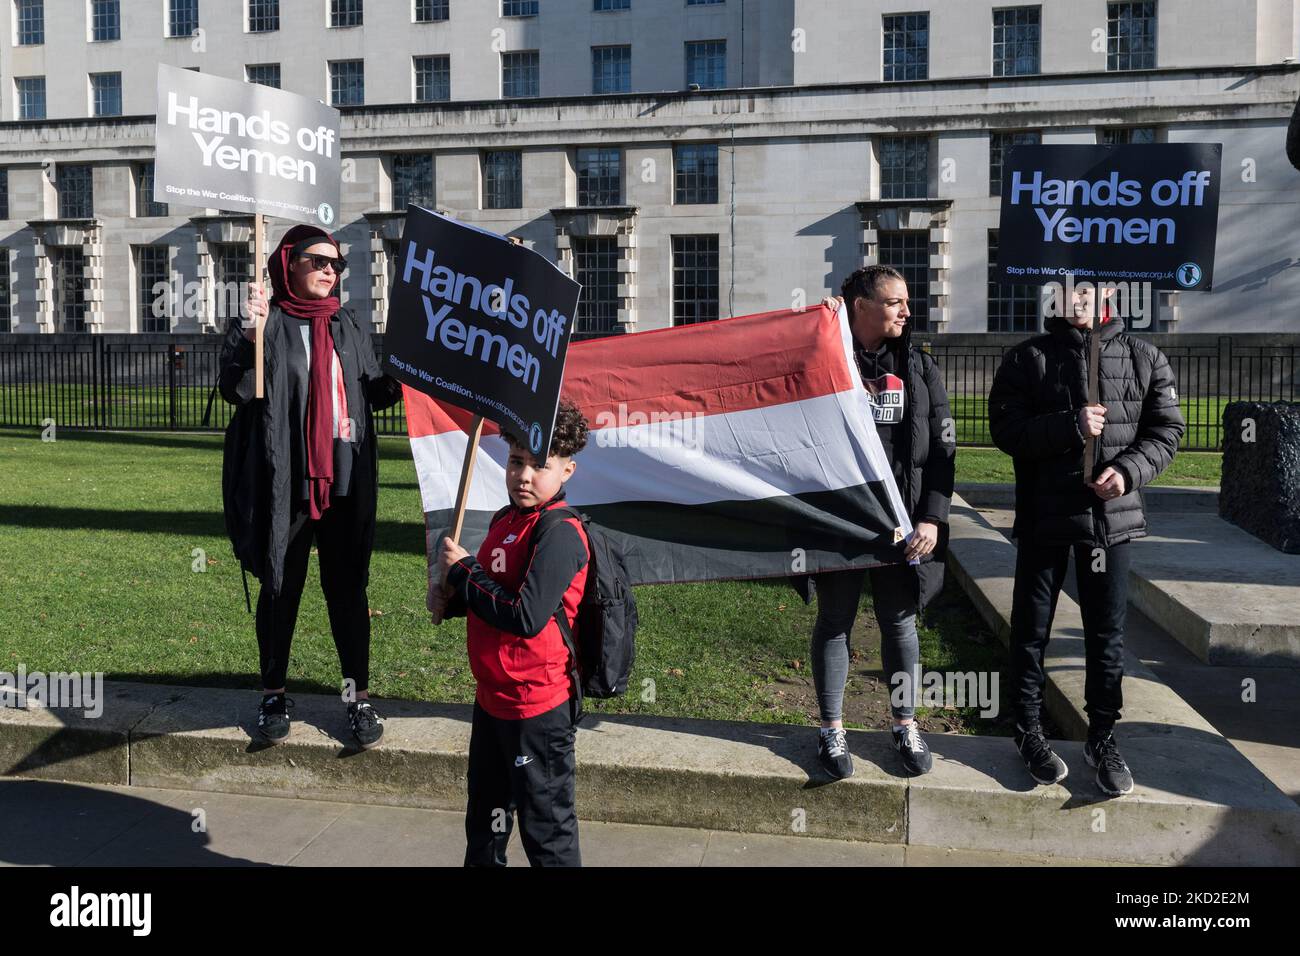 LONDRES, REINO UNIDO - 12 DE FEBRERO de 2022: Manifestantes sostienen pancartas y una bandera yemenita durante una protesta en las afueras de Downing Street contra la guerra y la crisis humanitaria en curso en Yemen el 12 de febrero de 2022 en Londres, Inglaterra. Los manifestantes piden al gobierno del Reino Unido que ponga fin a la venta de armas a Arabia Saudita, que ha estado liderando la coalición contra los hutíes respaldados por Irán en Yemen durante los últimos siete años. (Foto de Wiktor Szymanowicz/NurPhoto) Foto de stock